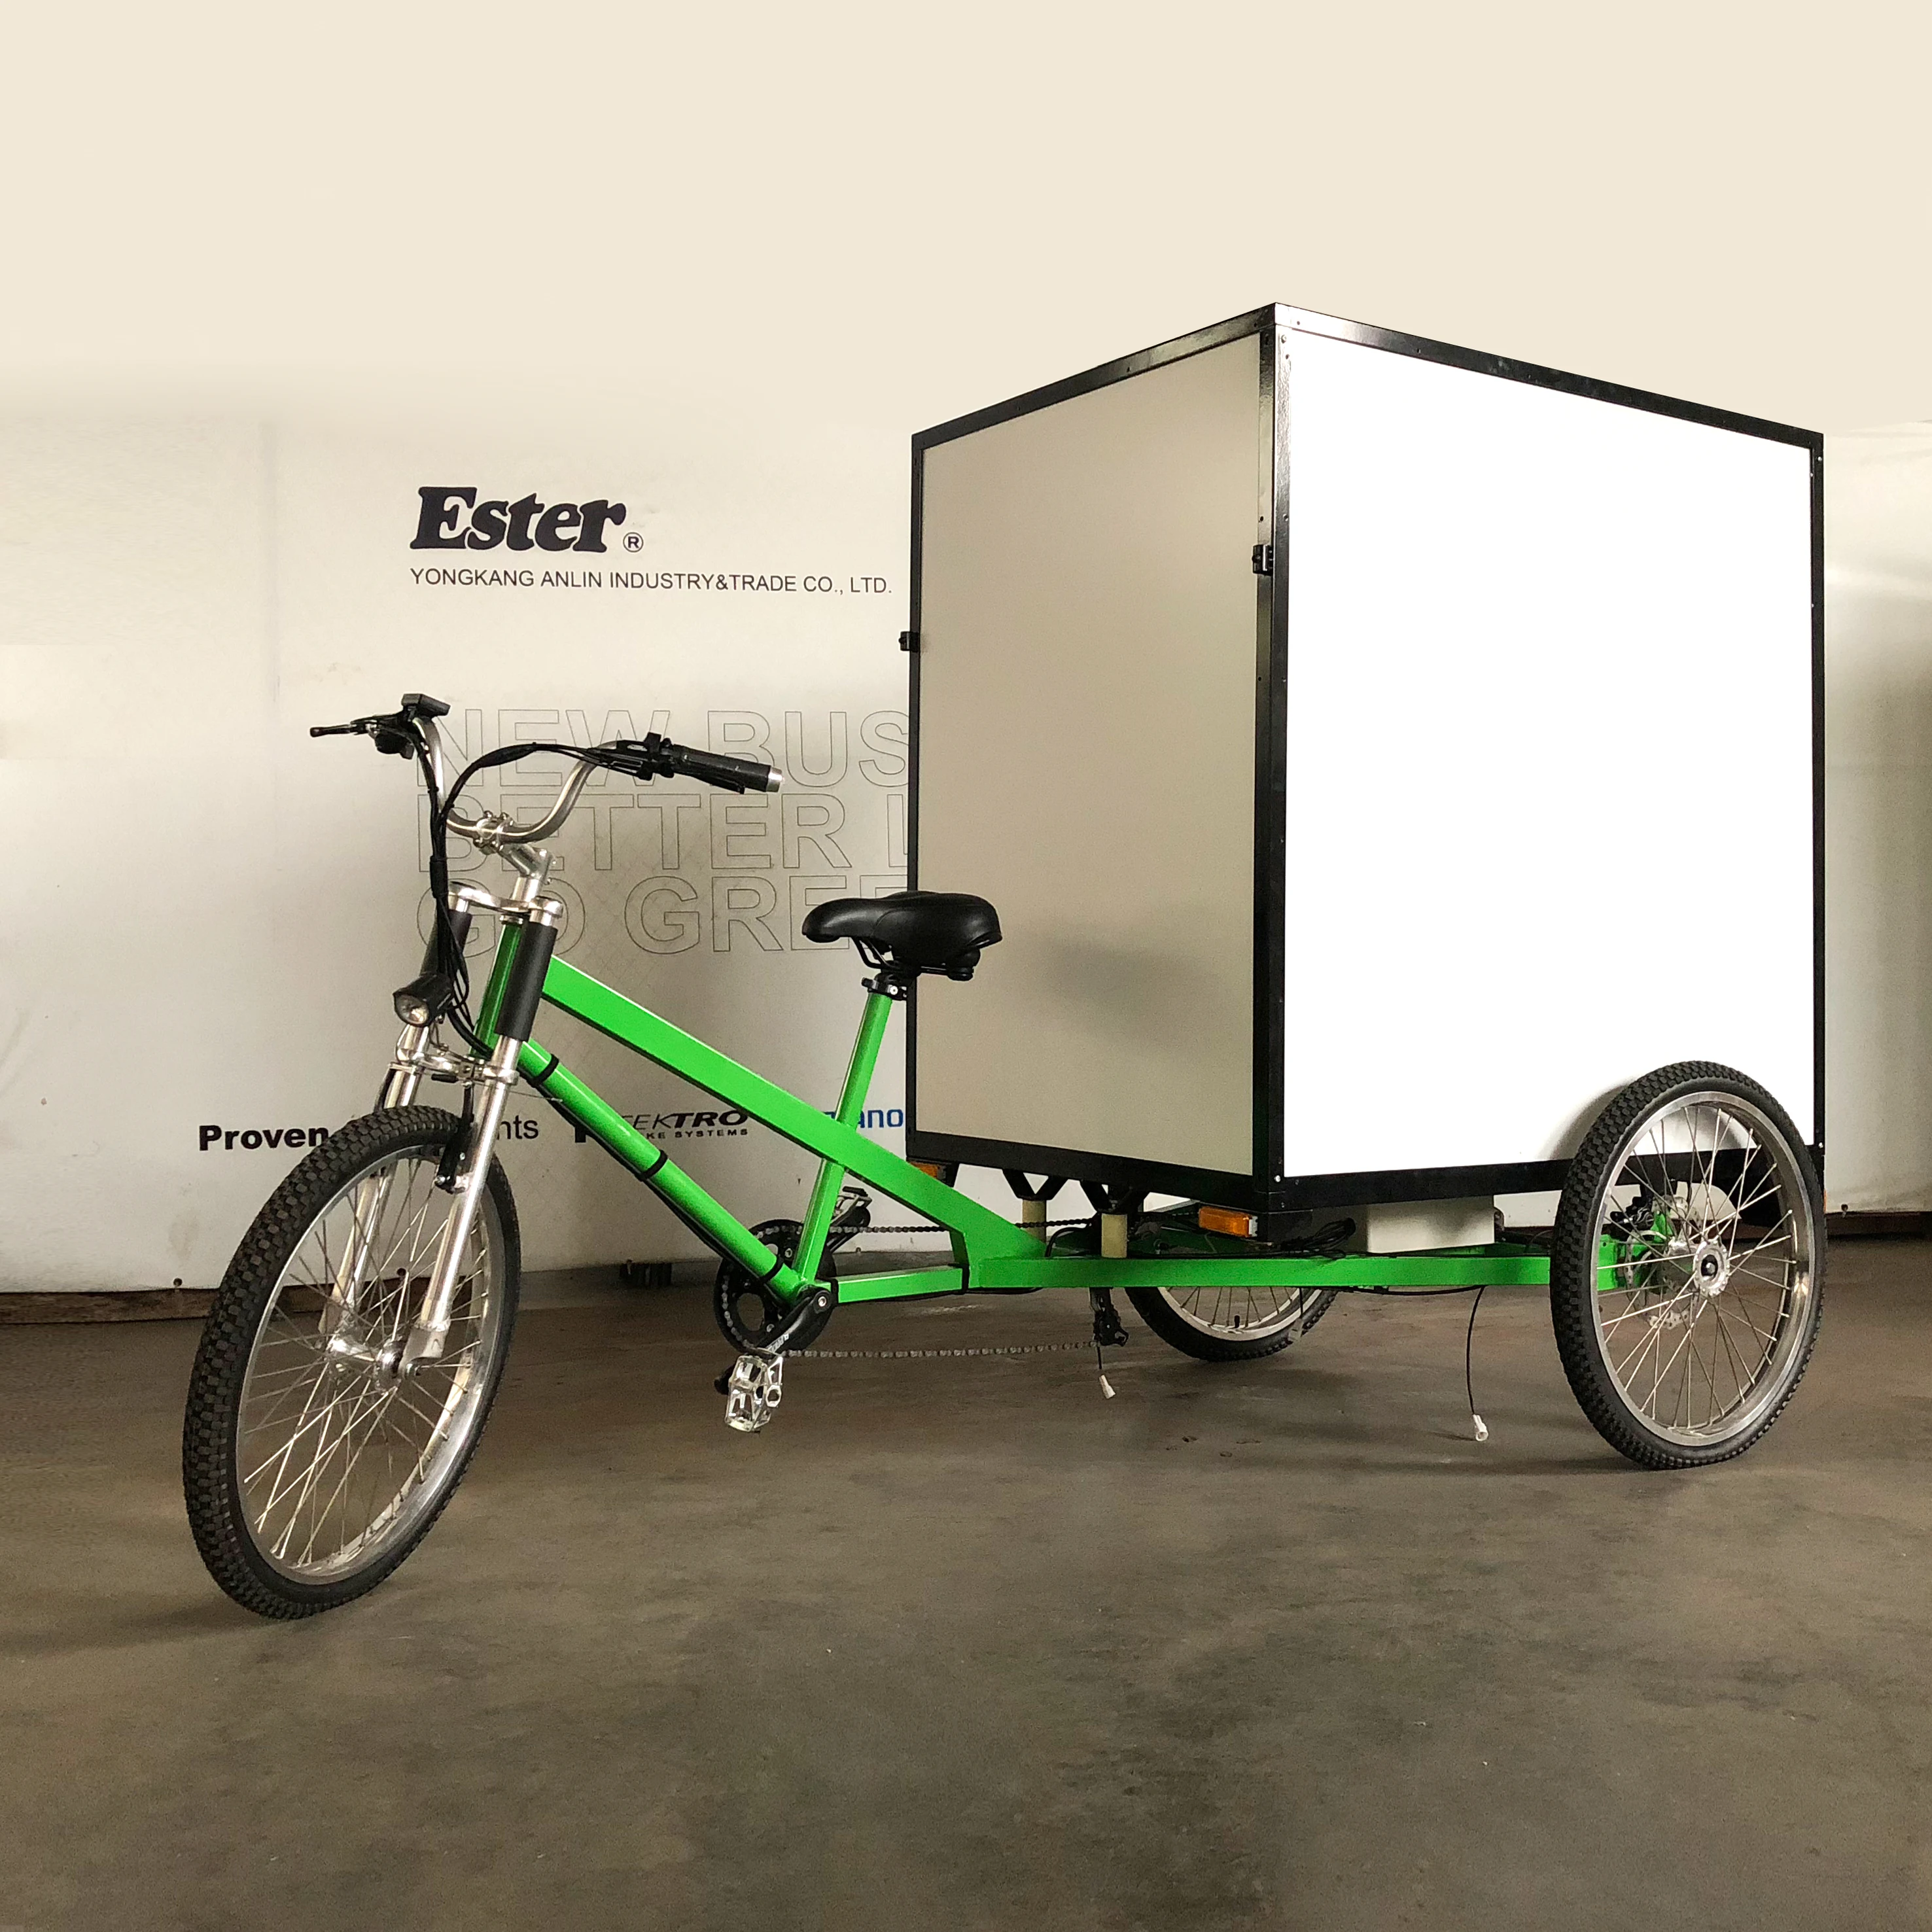 uber delivery on bike